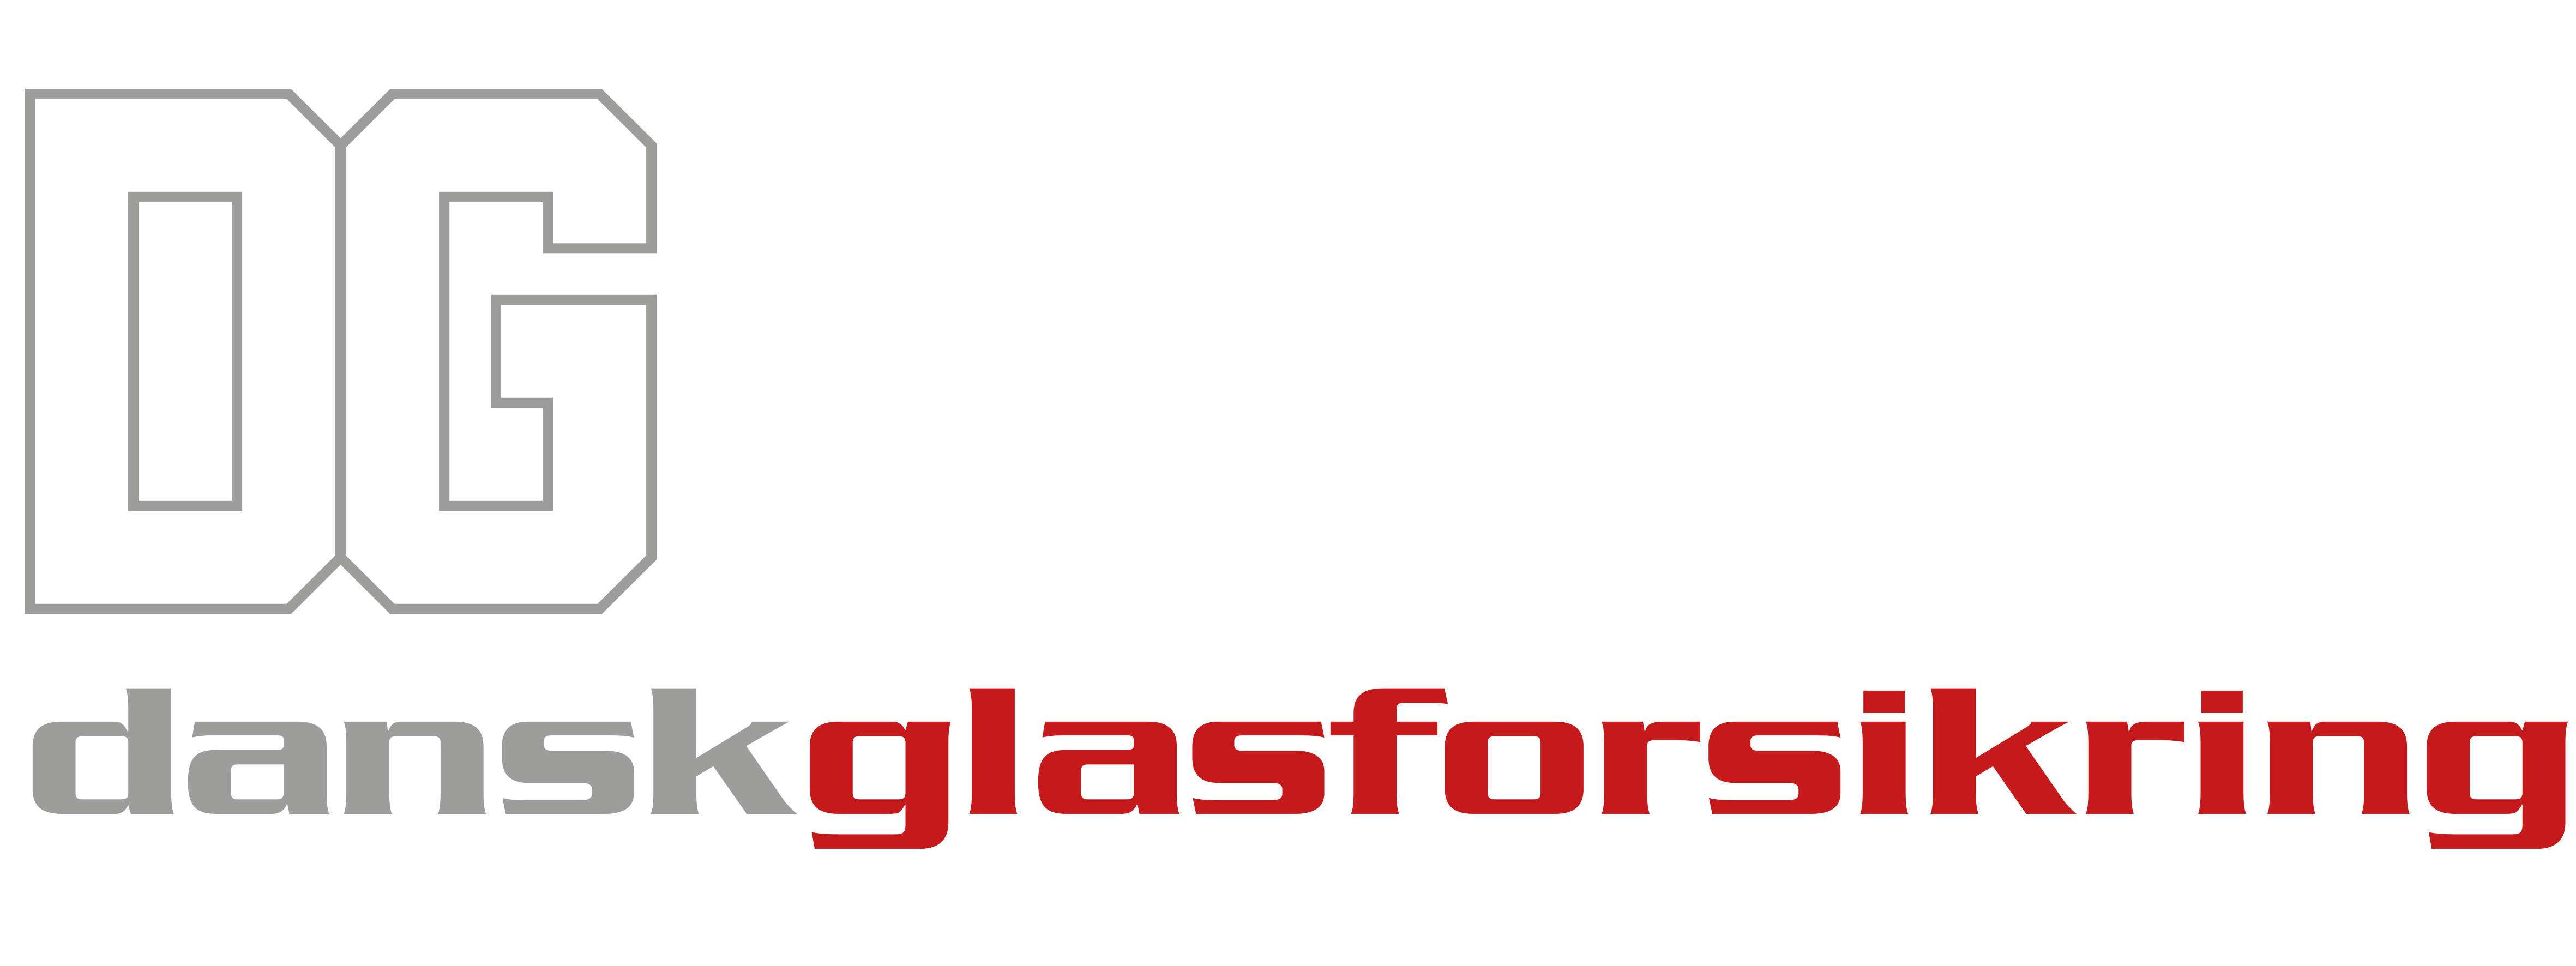 Dansk Glasforsikring logo